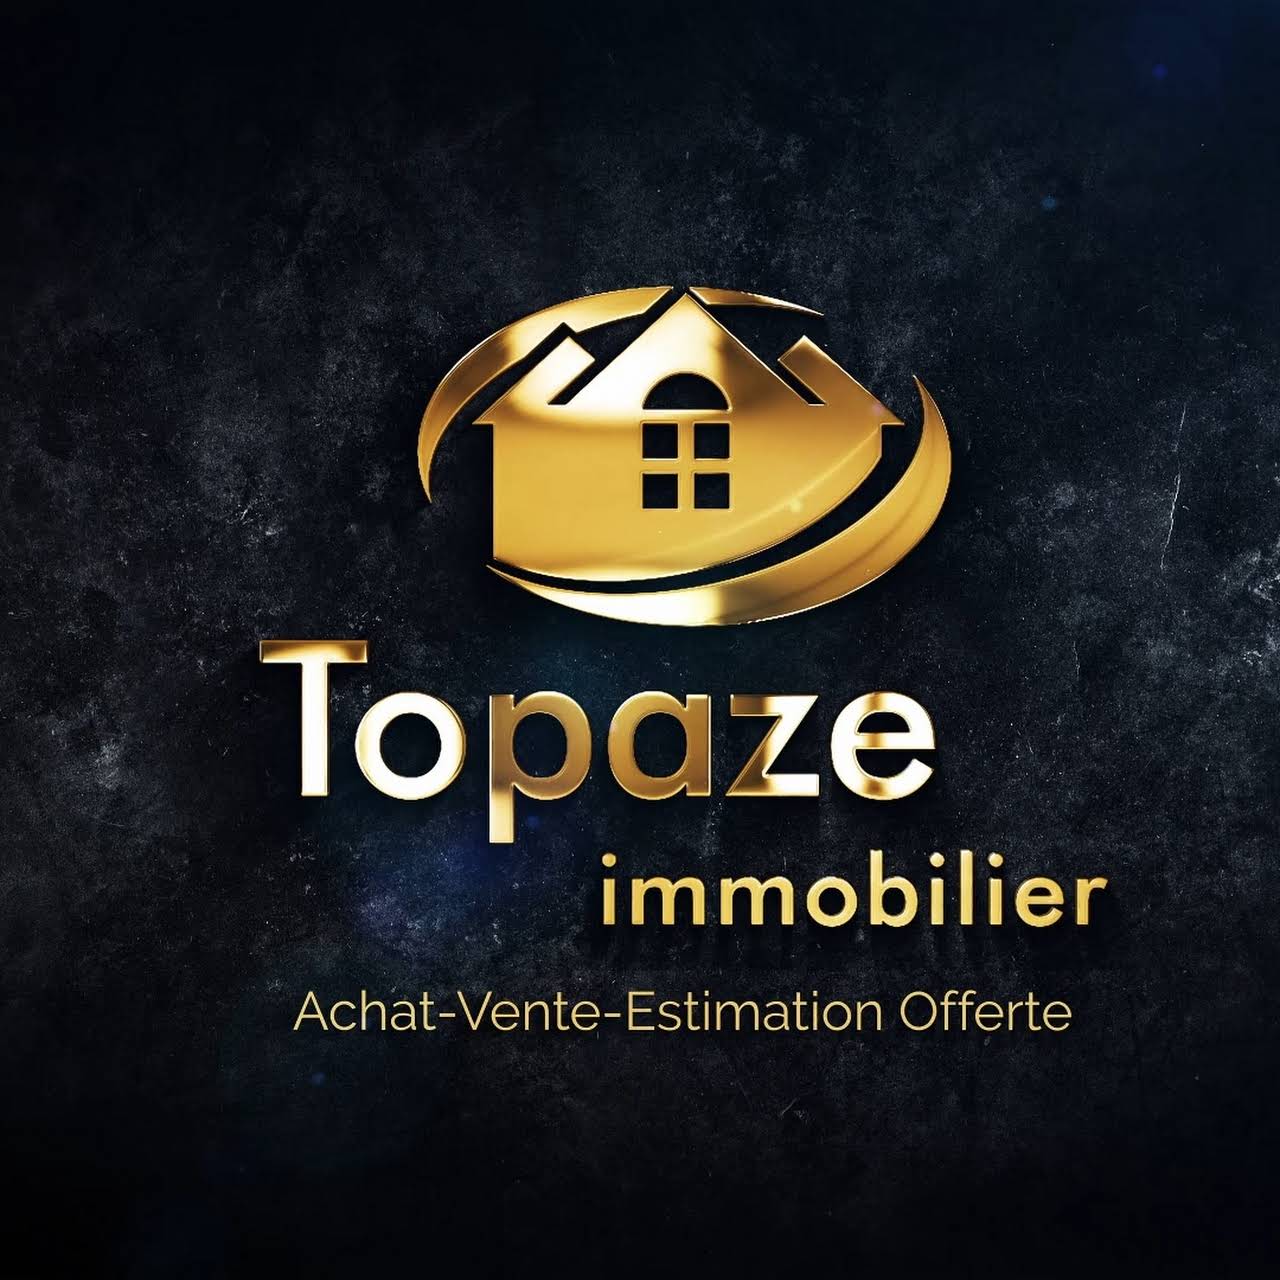 You are currently viewing Estimation gratuite avec l’agence immobilière à Tours Topaze